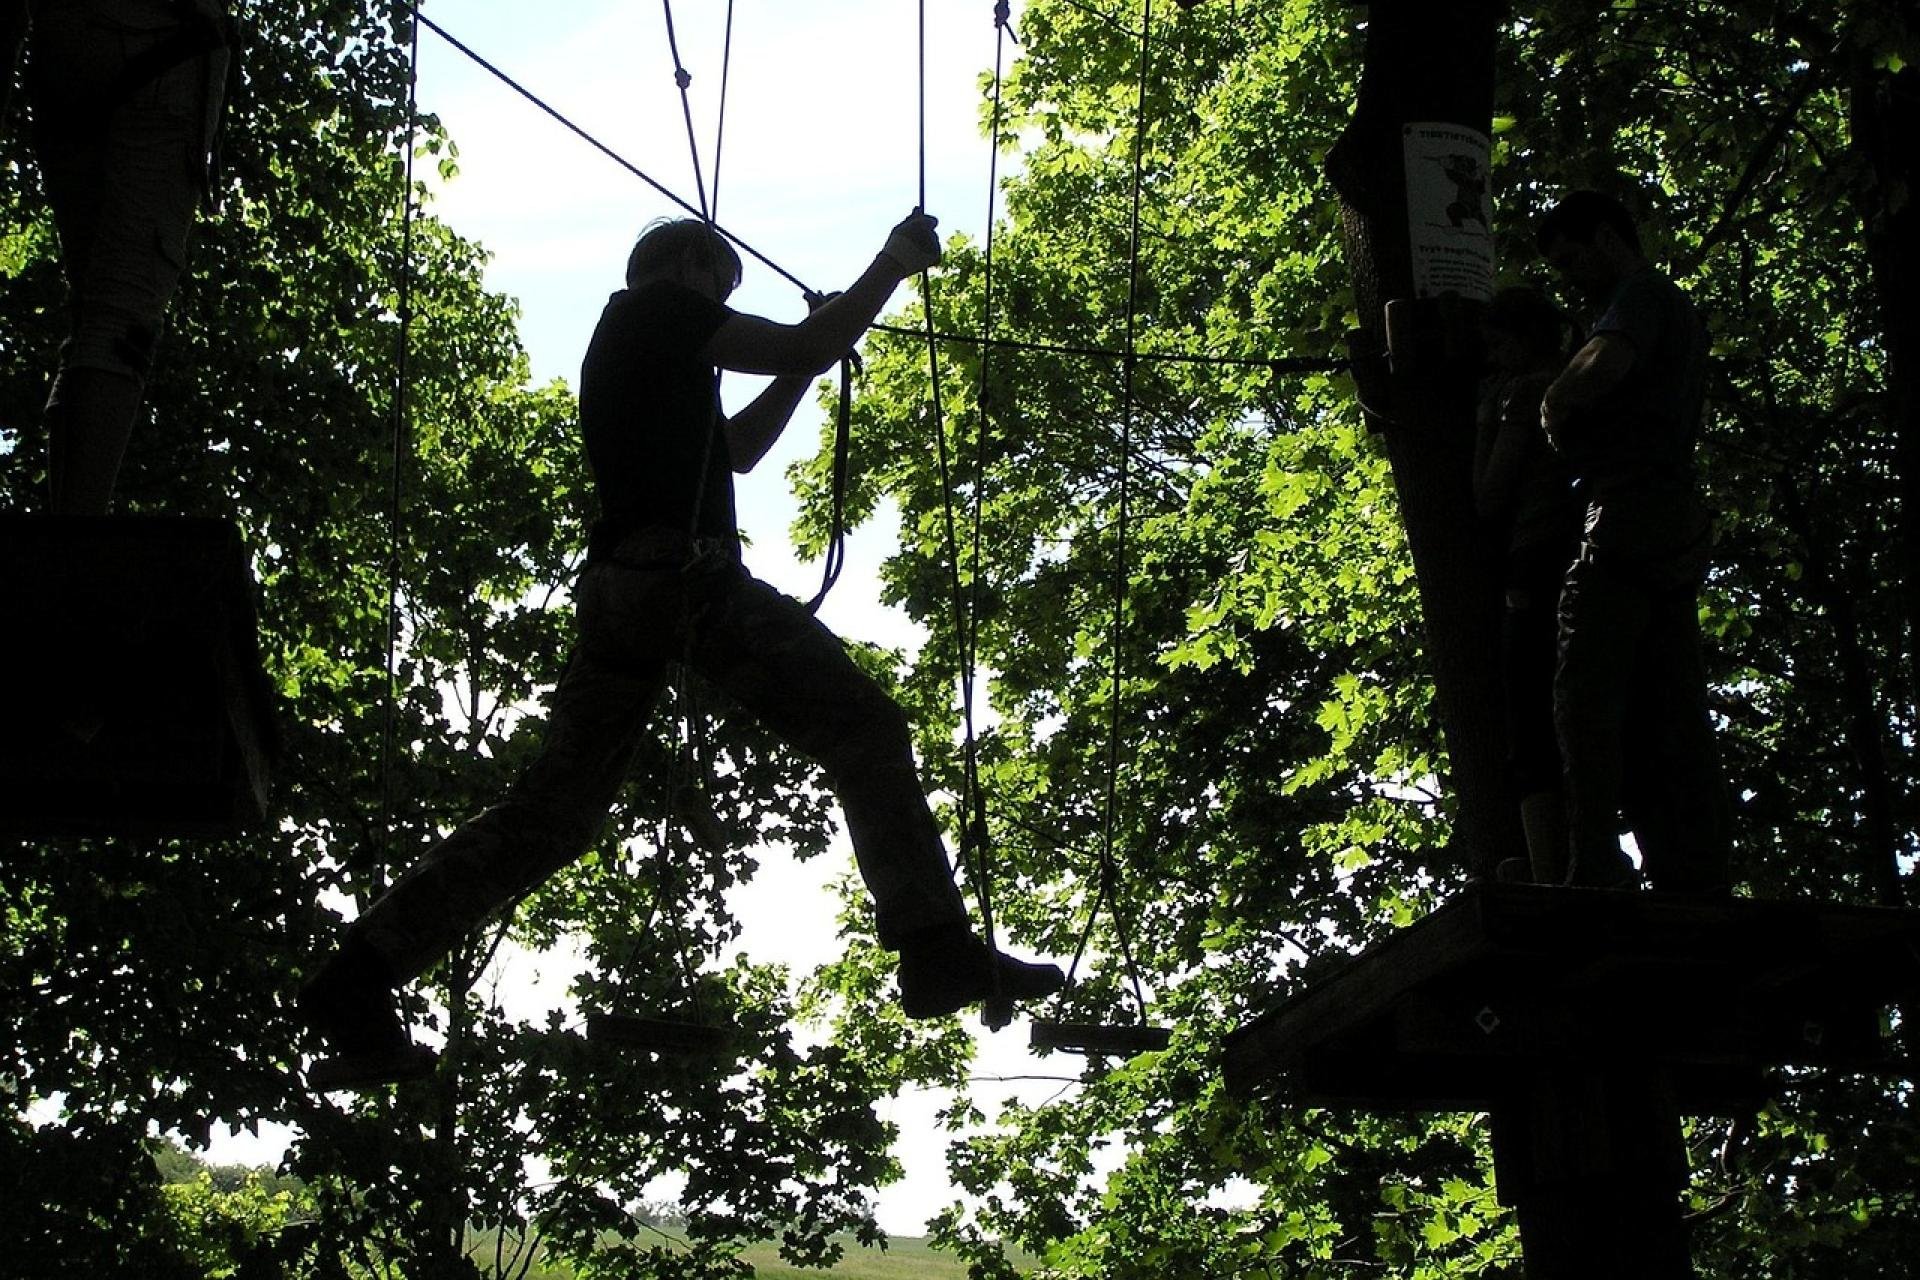 Een man hangt in een touwbrug tussen twee bomen